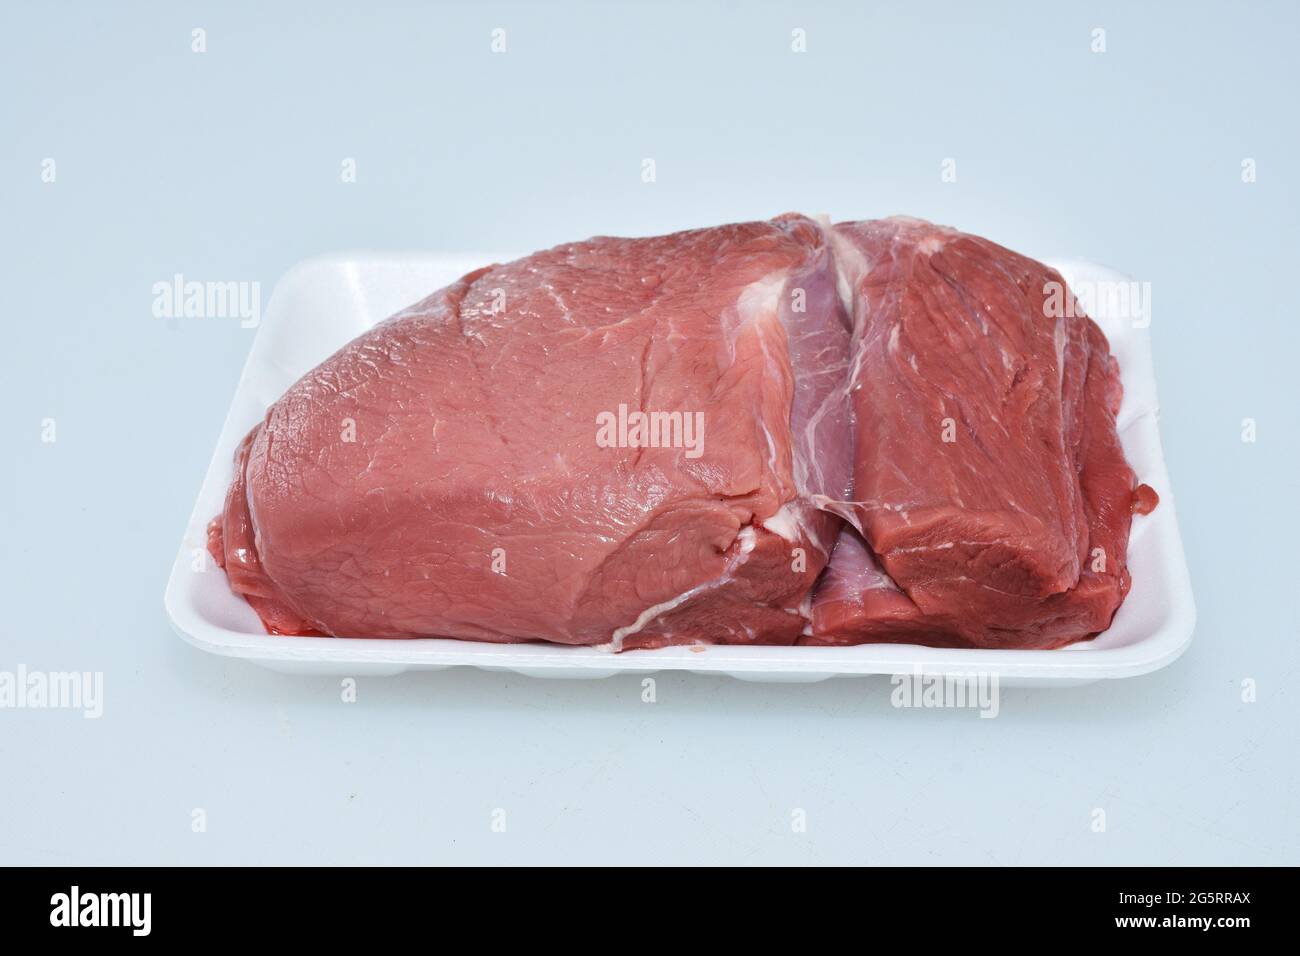 Lamm dicke Flanke ohne Knochen Fleisch in Teller auf weißem Hintergrund, Metzgerschnitt, rohes Hammelstück Stockfoto